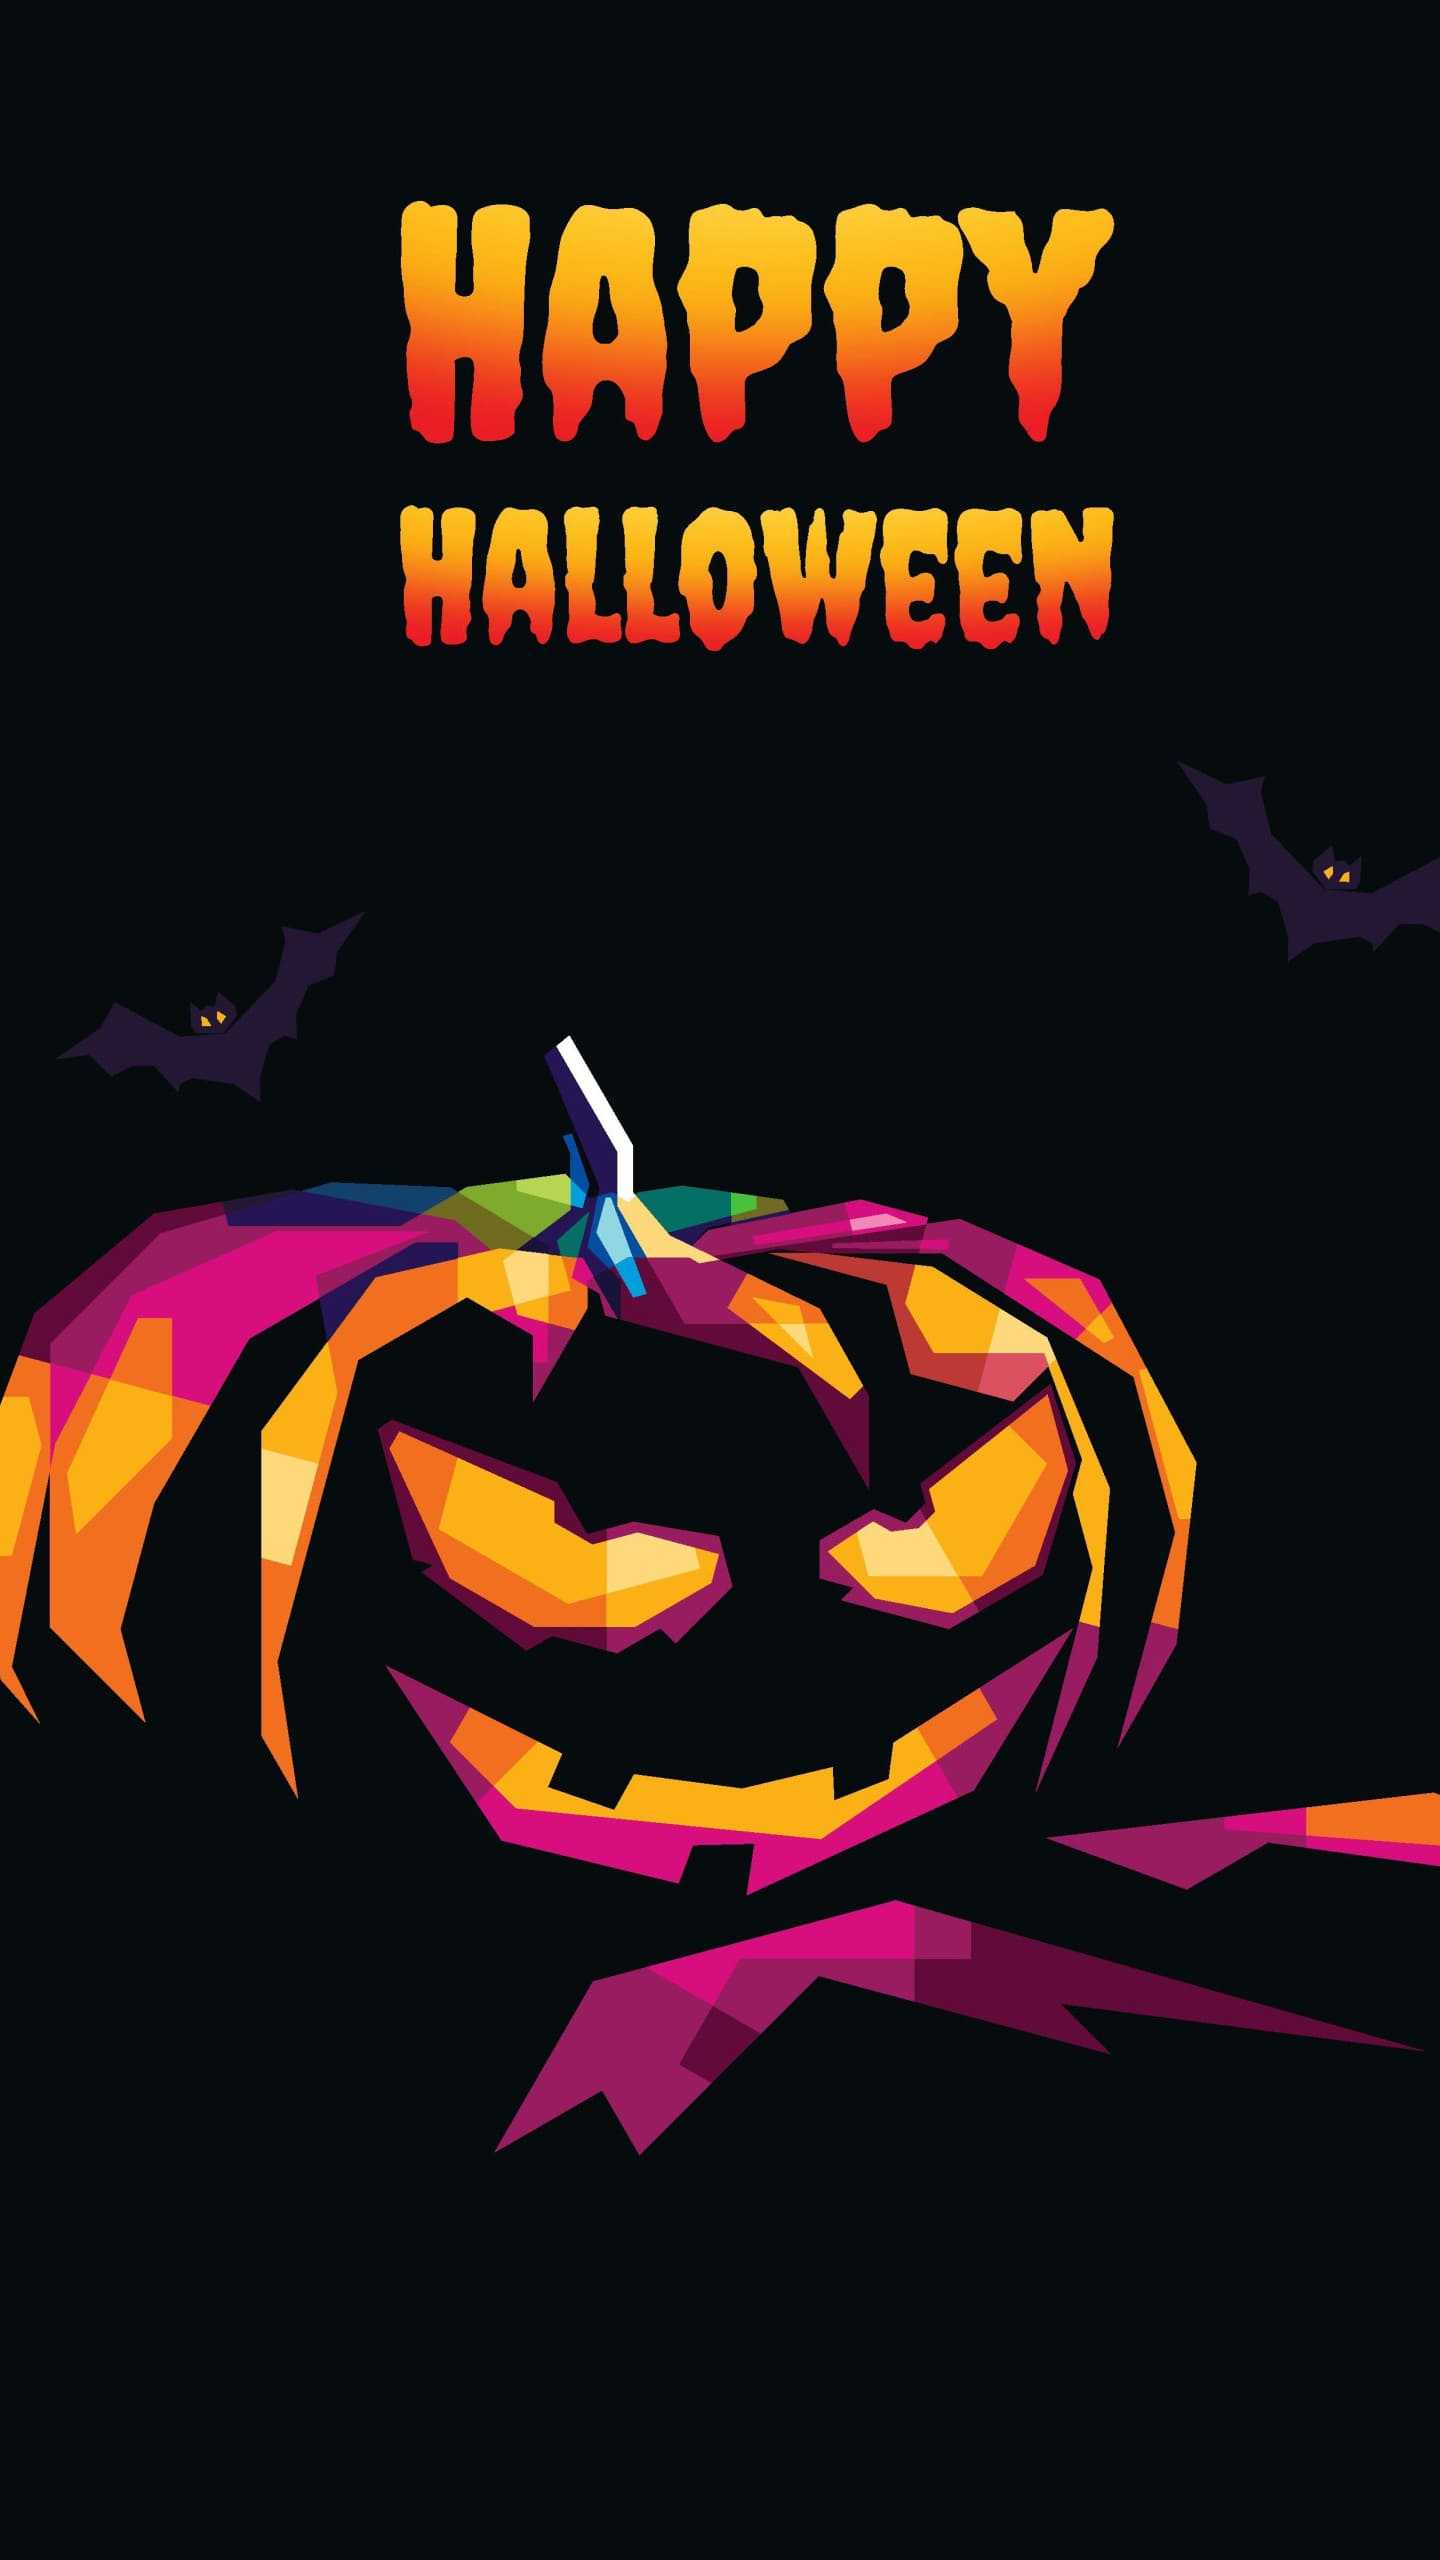 Happy Halloween Wallpaper - iXpap